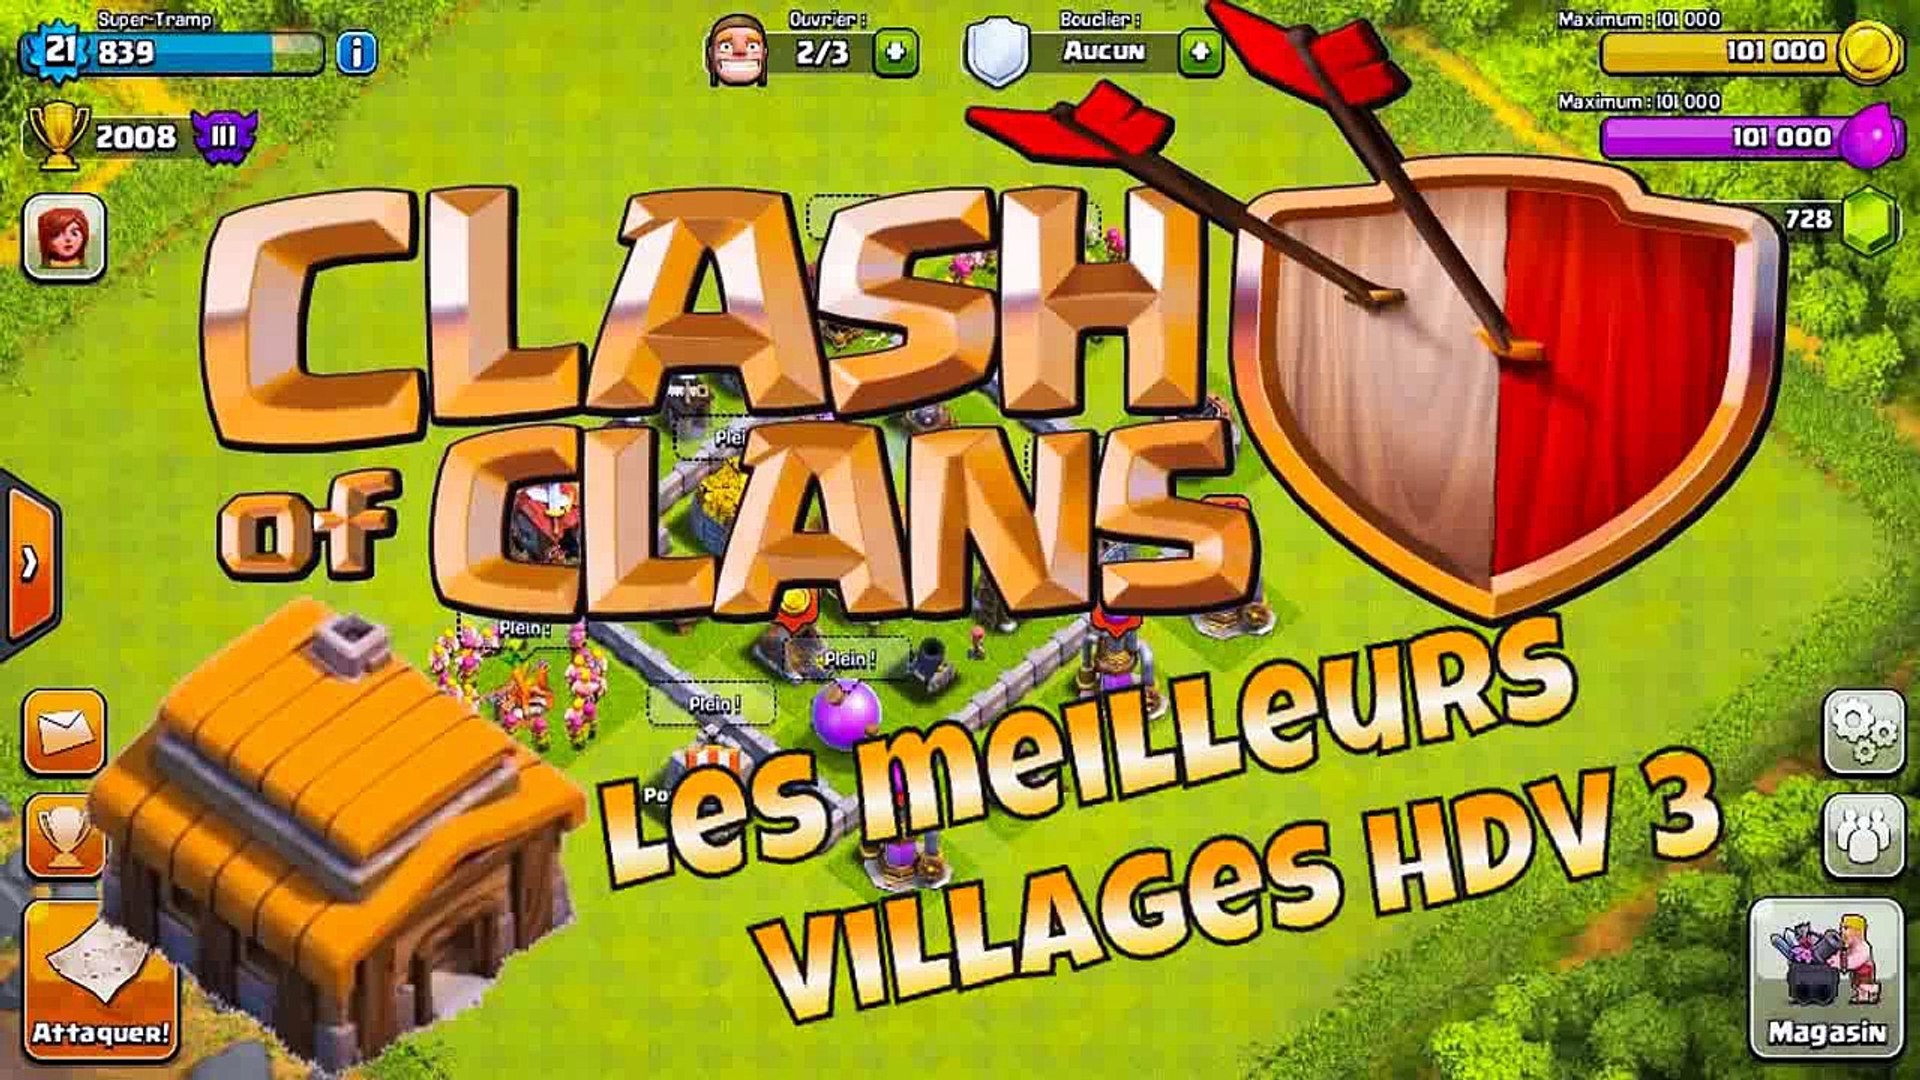 TUTO Clash of Clans Les Meilleurs Villages HDV 3 - video Dailymotion